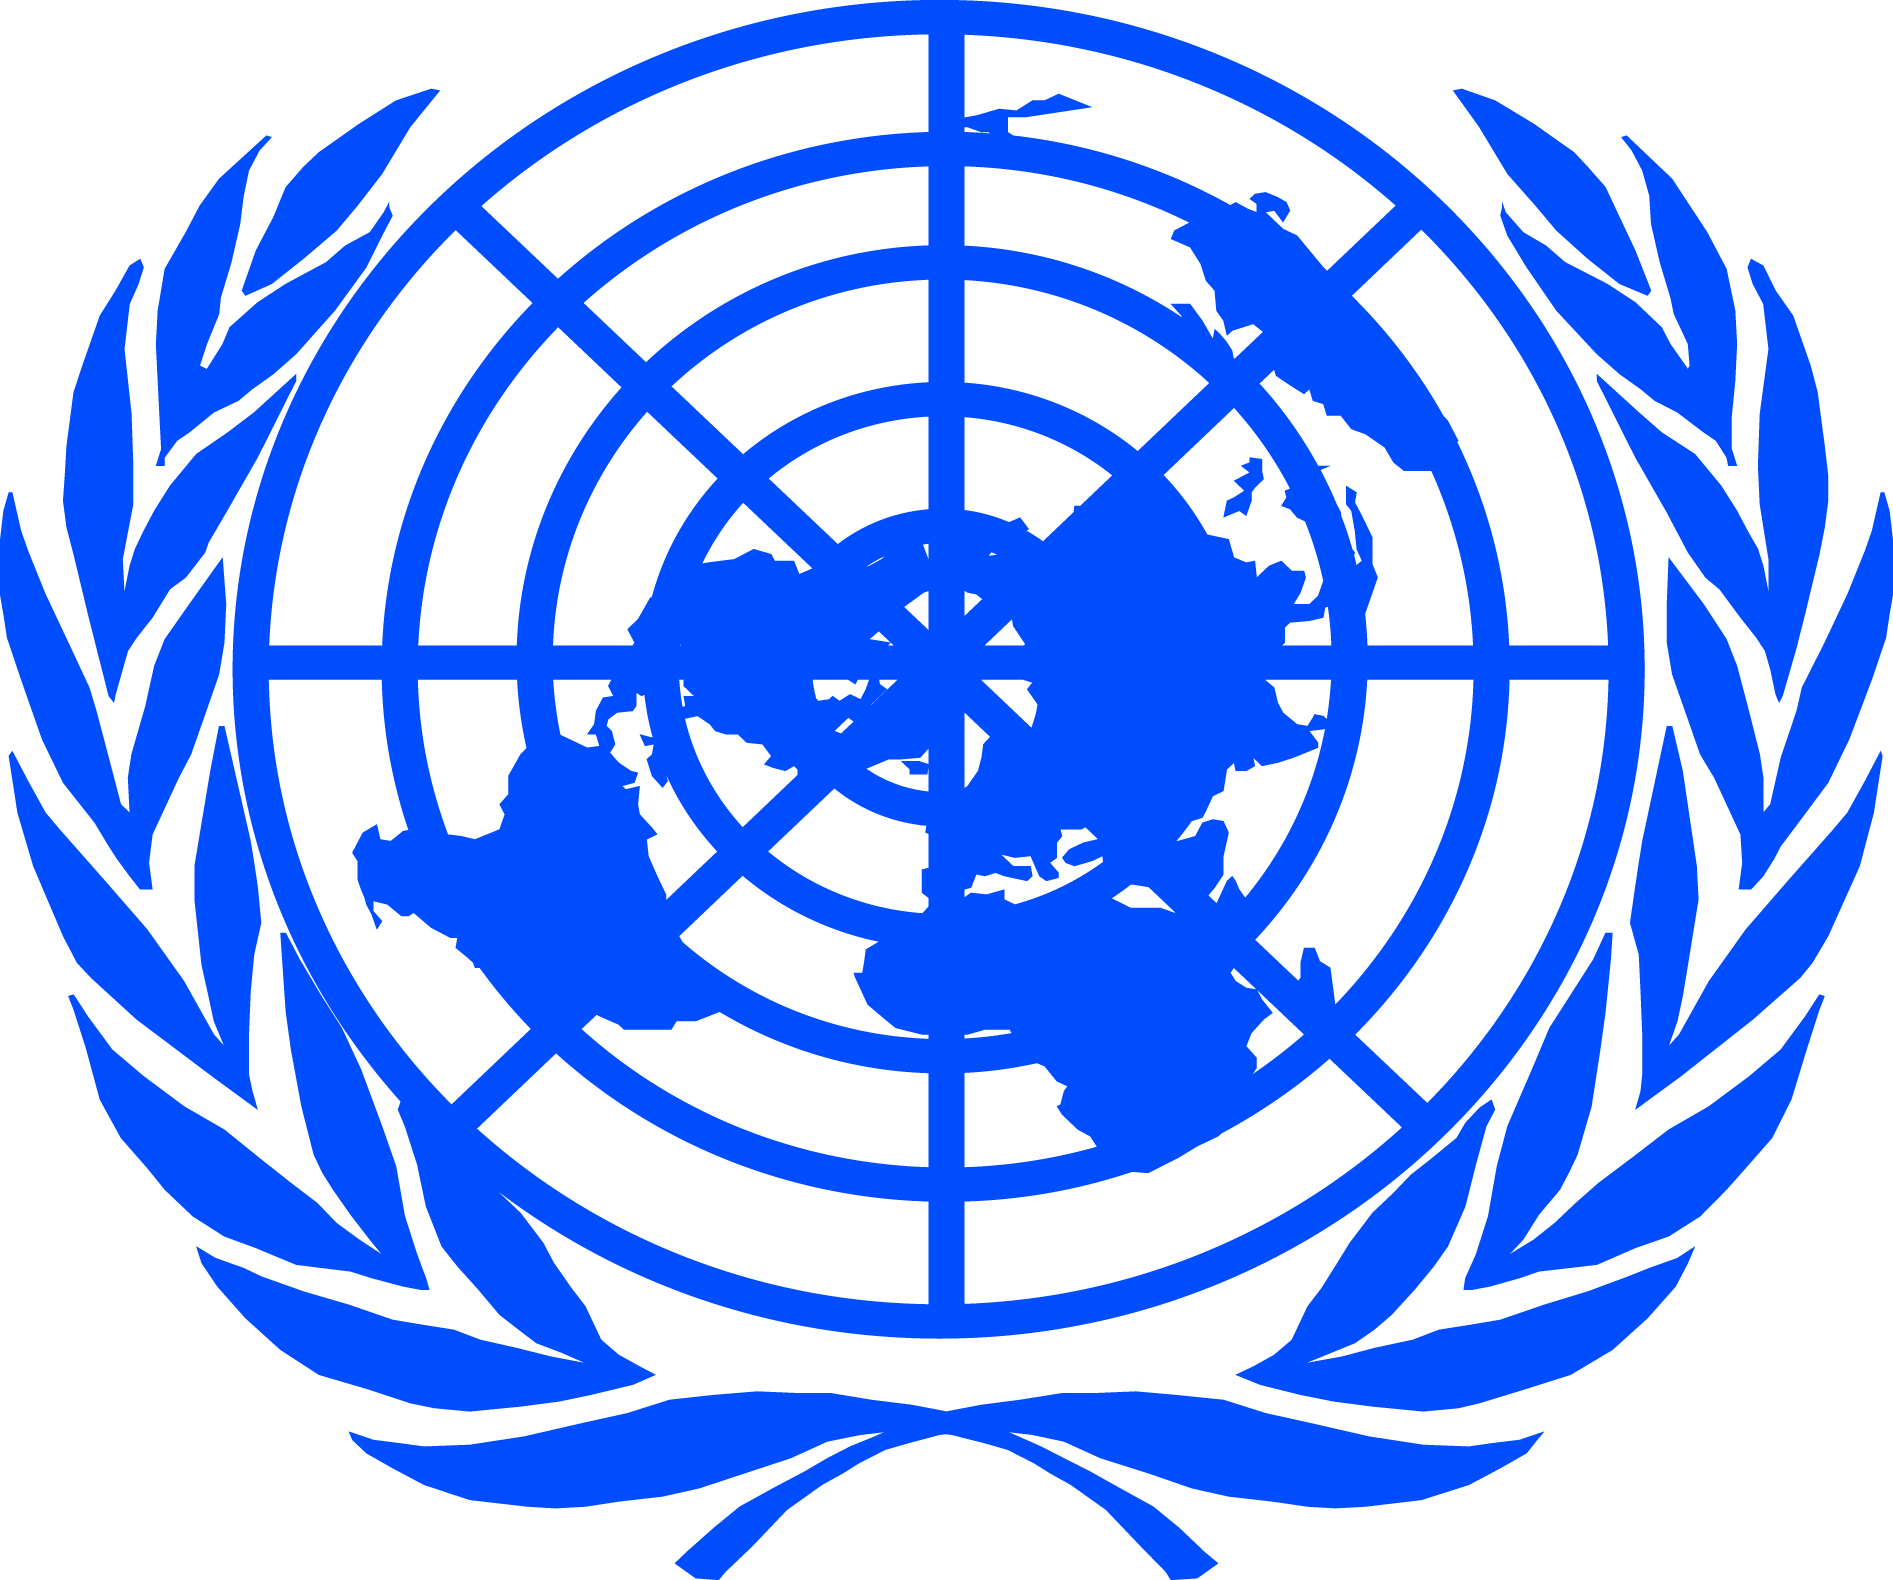 Укрепление оон. Всемирная организация ООН. Международные организации ООН. Организация Объединенных наций (ООН). Совет безопасности ООН флаг.